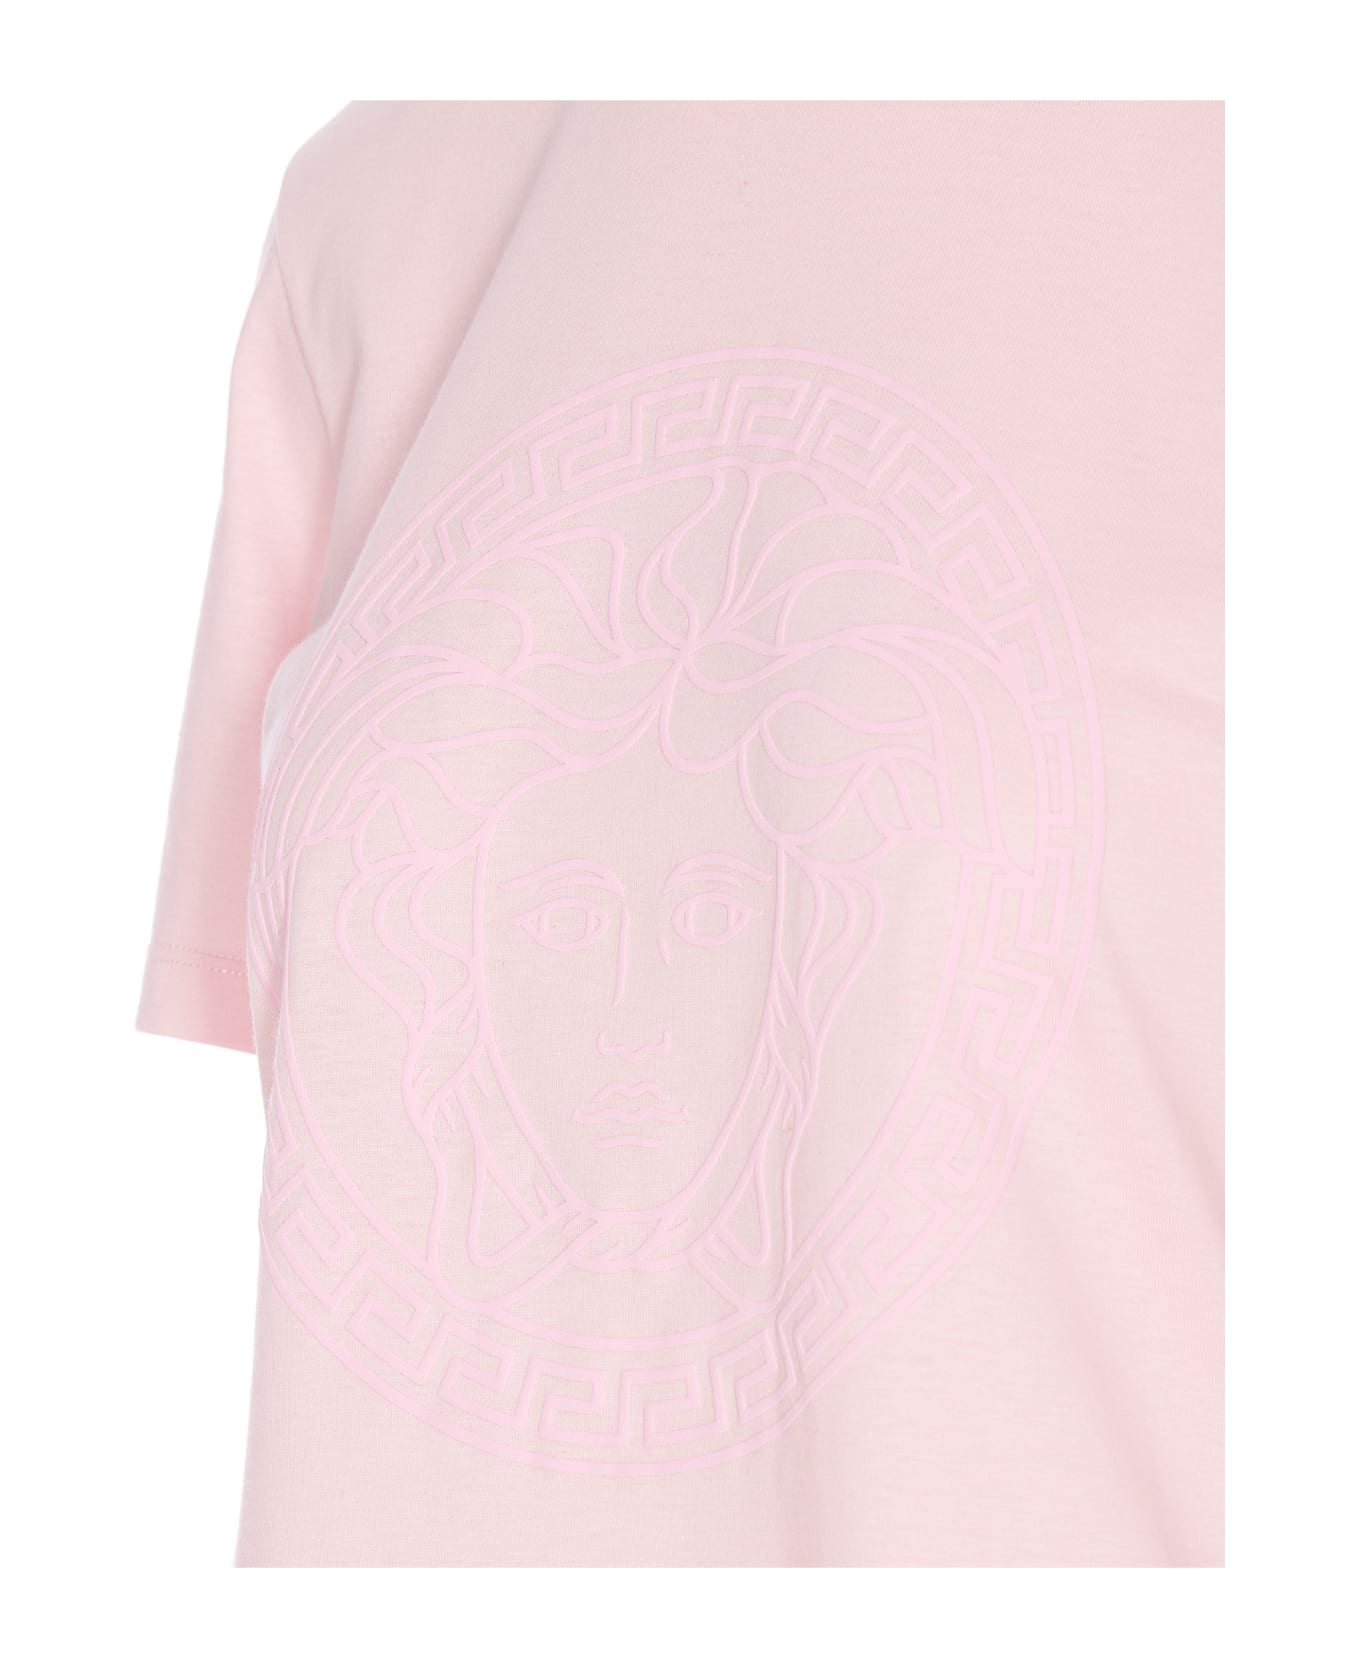 Versace Medusa Logo T-shirt - Pink